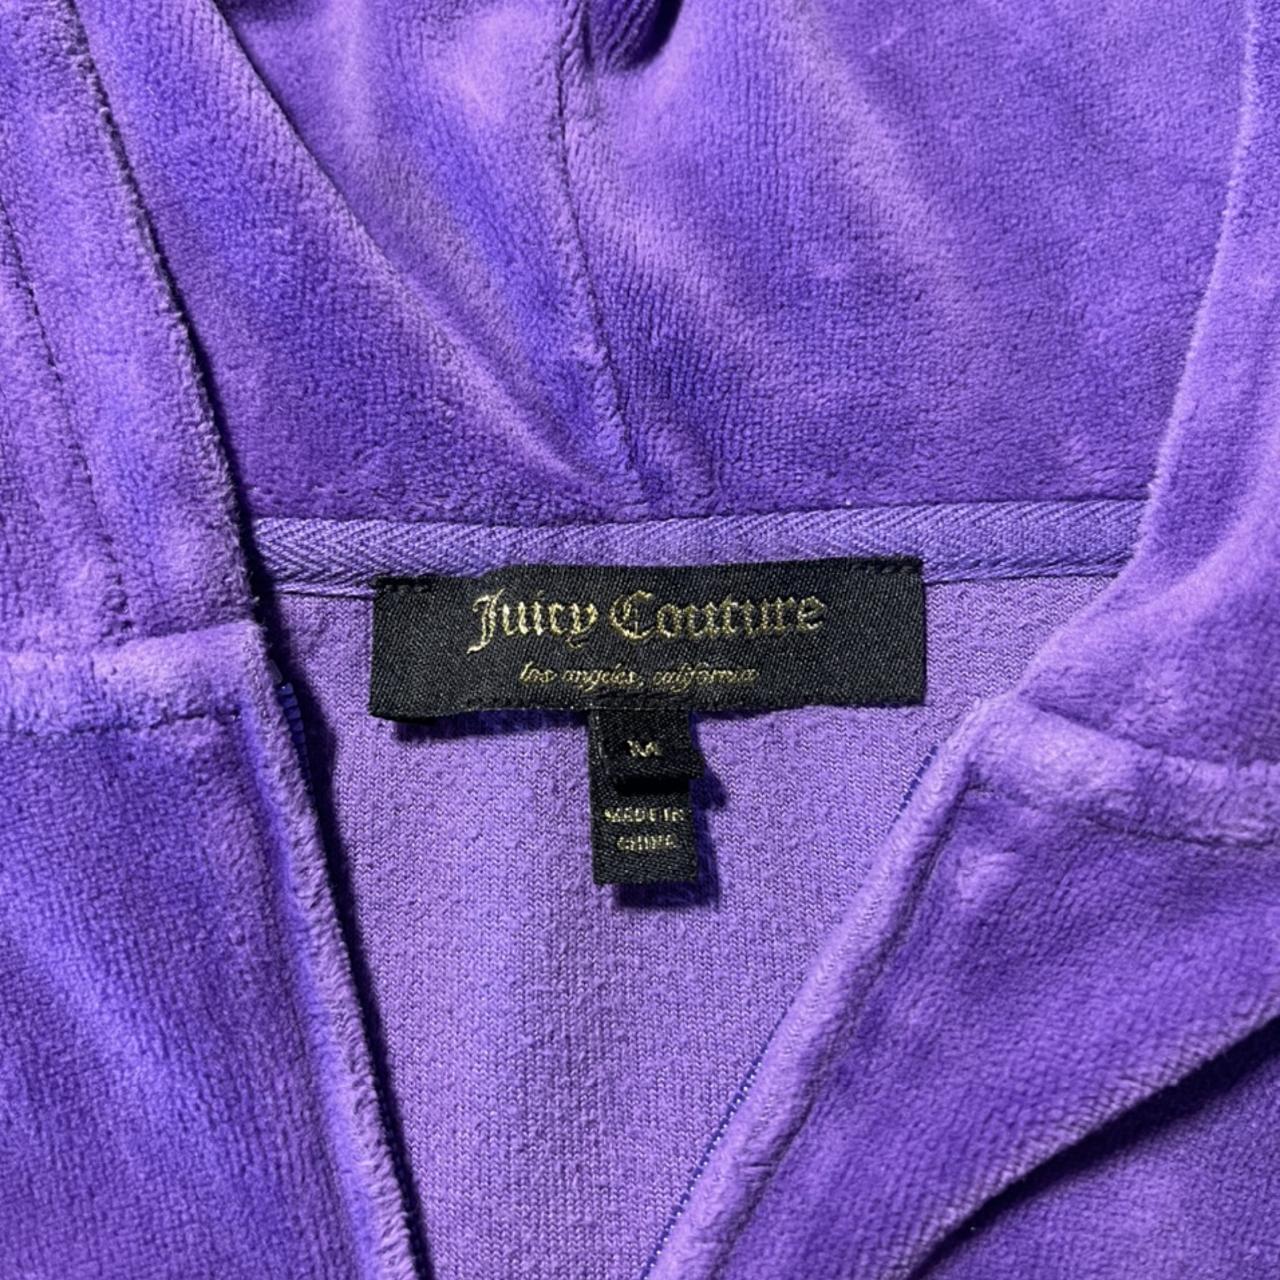 Authentic Rare Juicy Couture Purple Tracksuit... - Depop